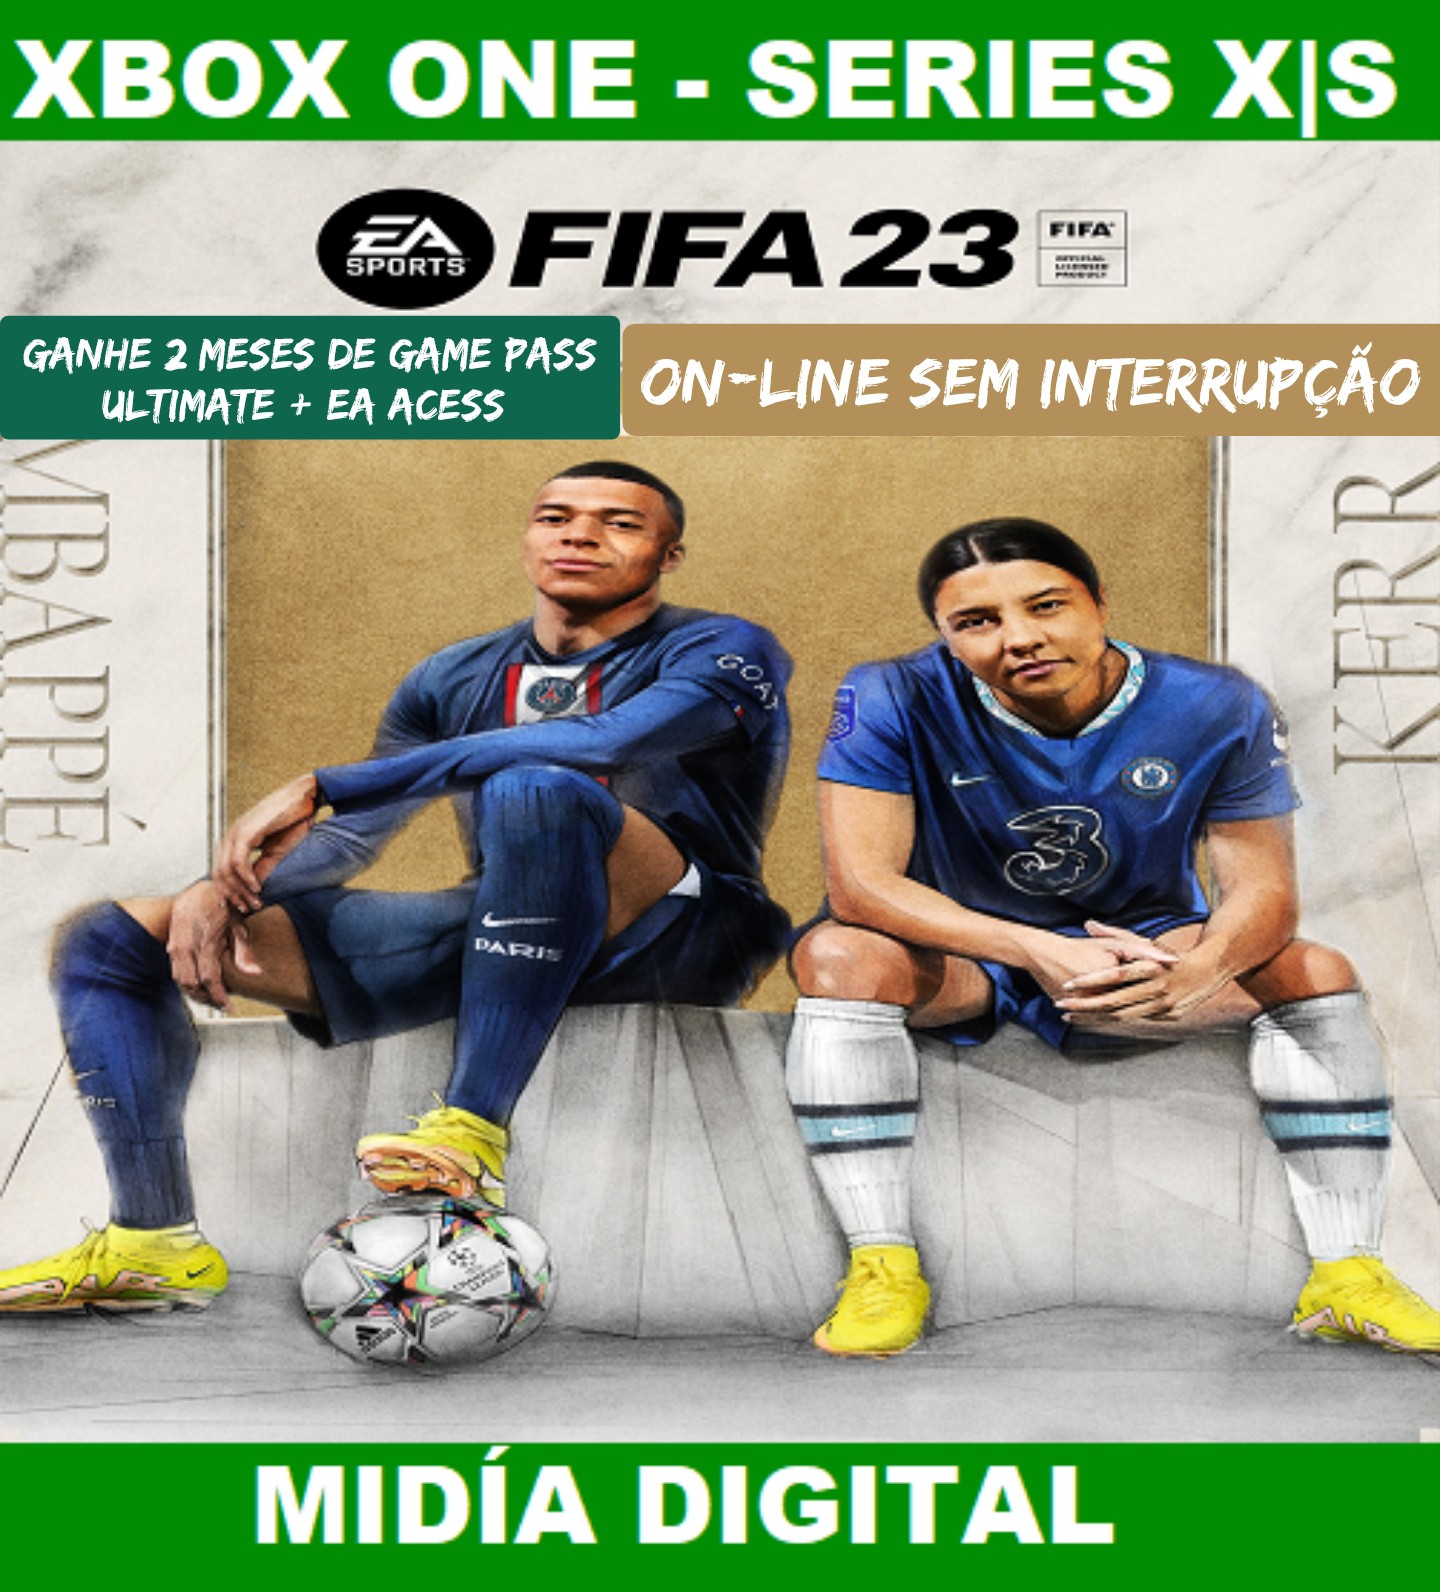 OFICIAL! FIFA 23 CONFIRMADO No Xbox GAME PASS Ultimate EM MAIO